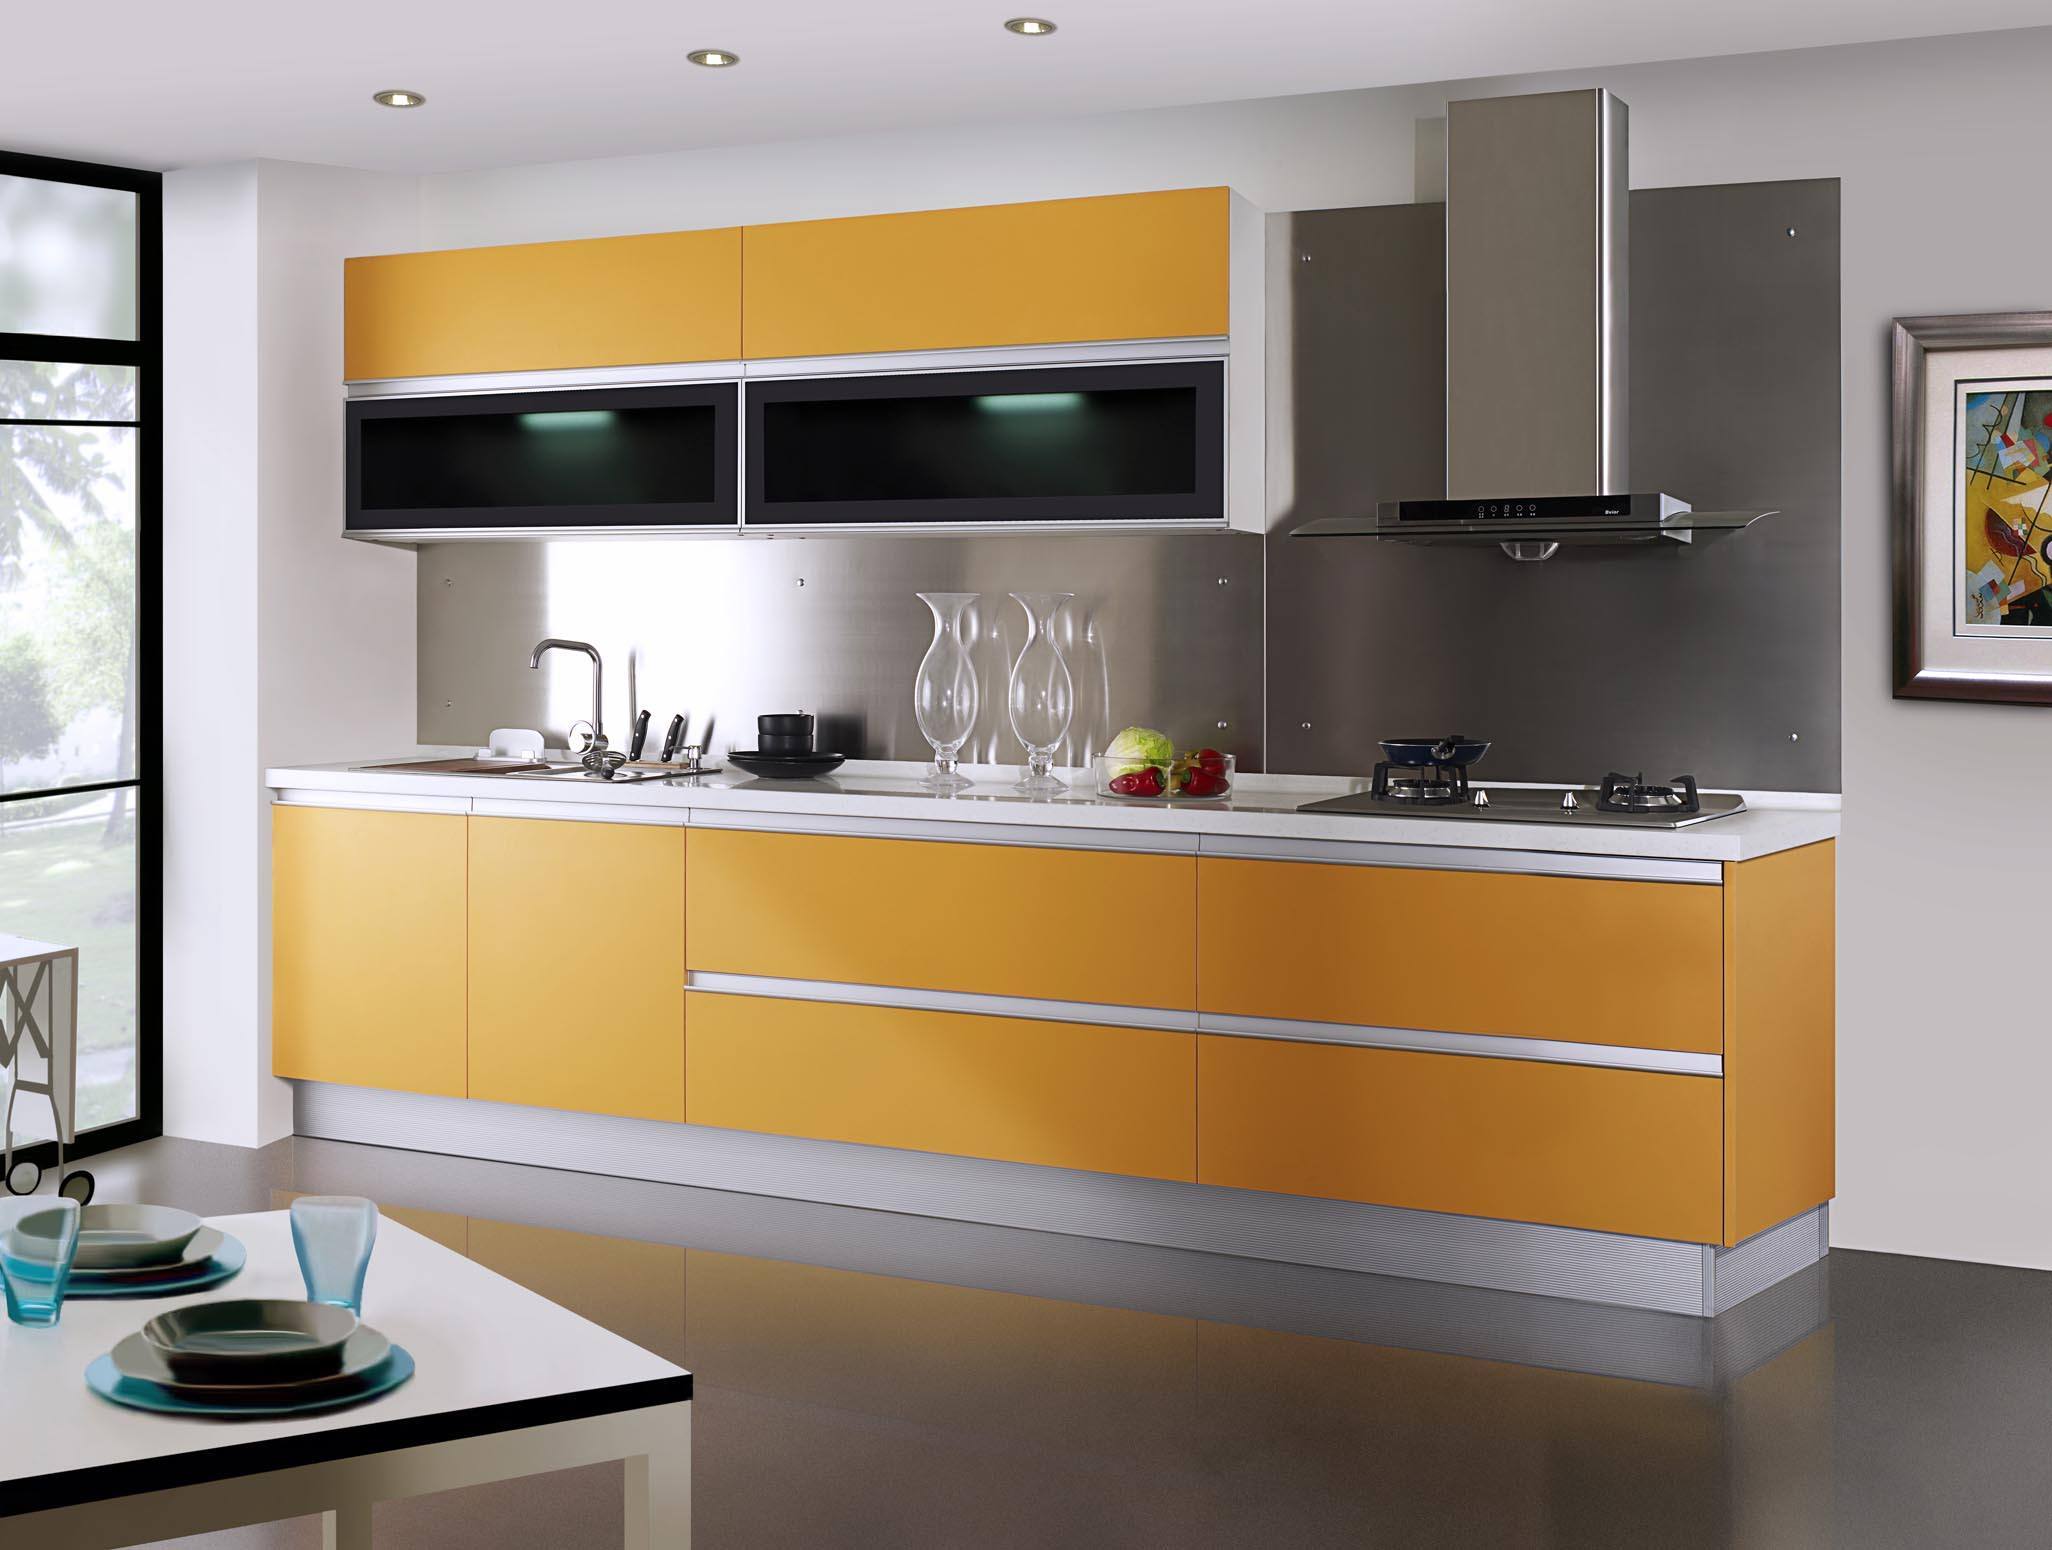 现代简约风格4平厨房橱柜装修效果图